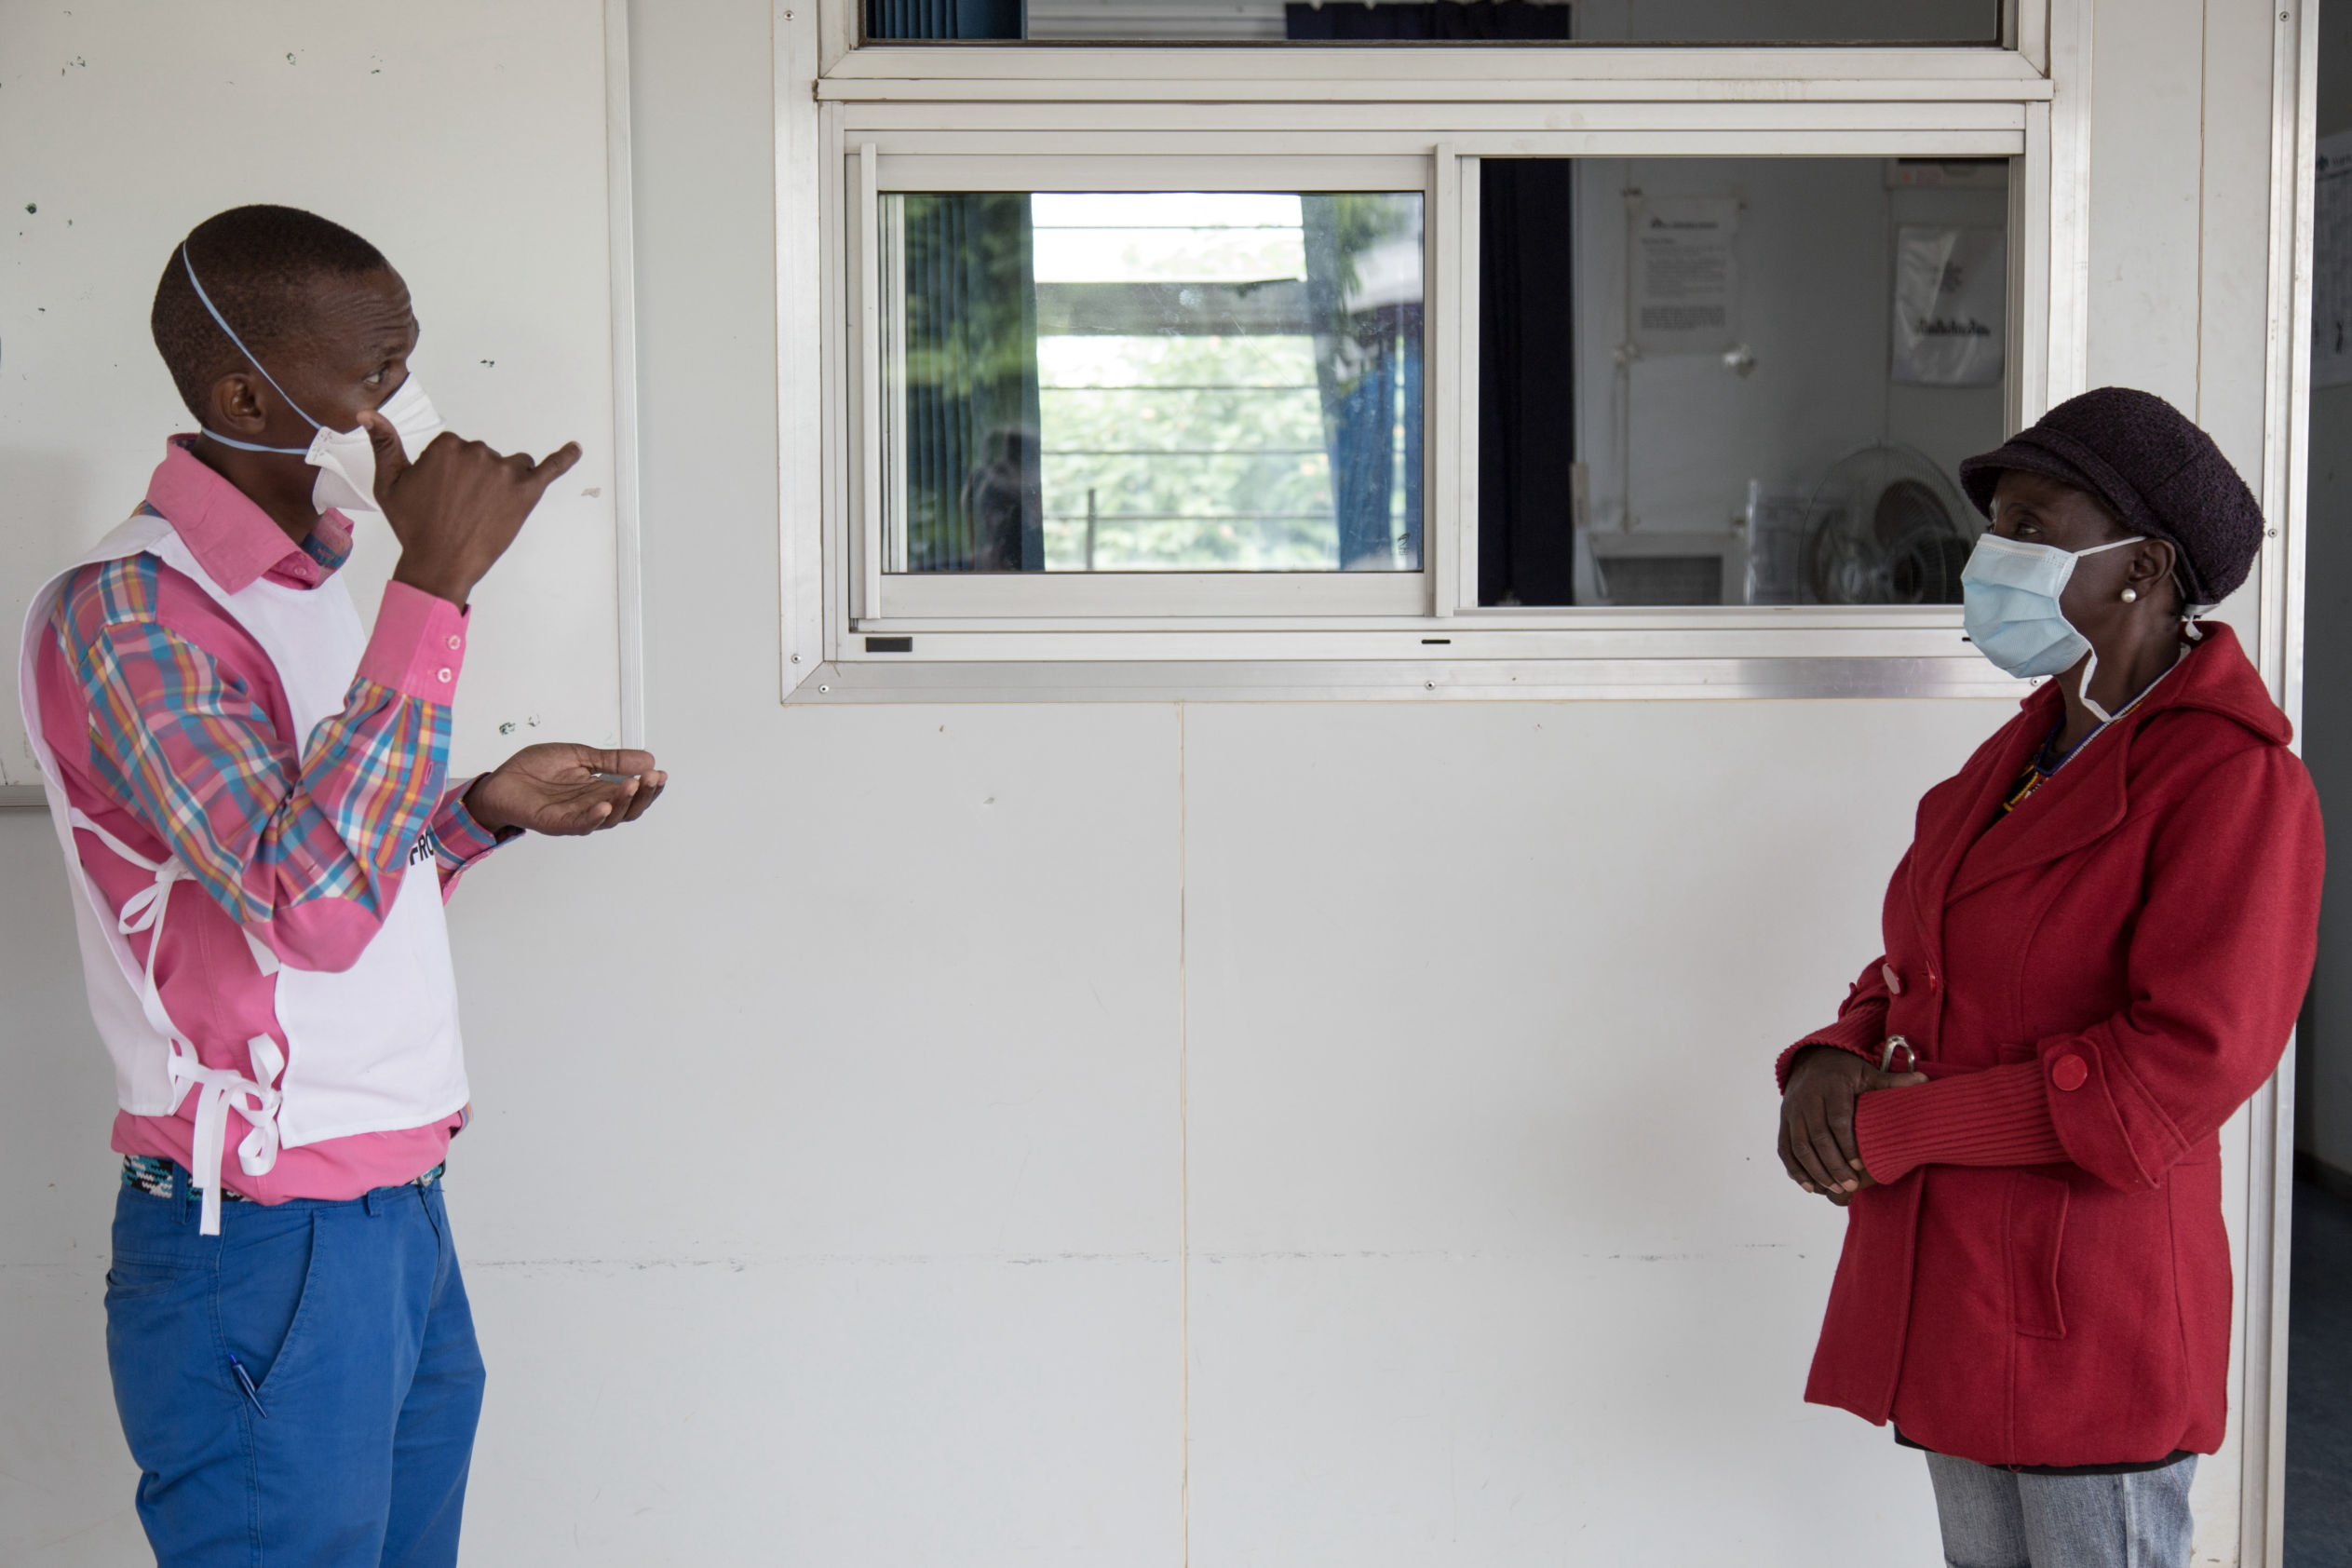 Celumusa Hlatswako (à gauche), conseiller mobile de MSF, parle en langage des signes avec Thulie (à droite), une patiente atteinte de MDR-TB non sourde, lors d'une formation en langage gestuel. Thulie est guérie mais elle voulait apprendre la langue des signes pour aider d'autres patients et d'autres personnes sourdes dans sa communauté. Clinique Matsapha, région de Manzini, Swaziland (Eswatini). Photo : Alexis Huguet.